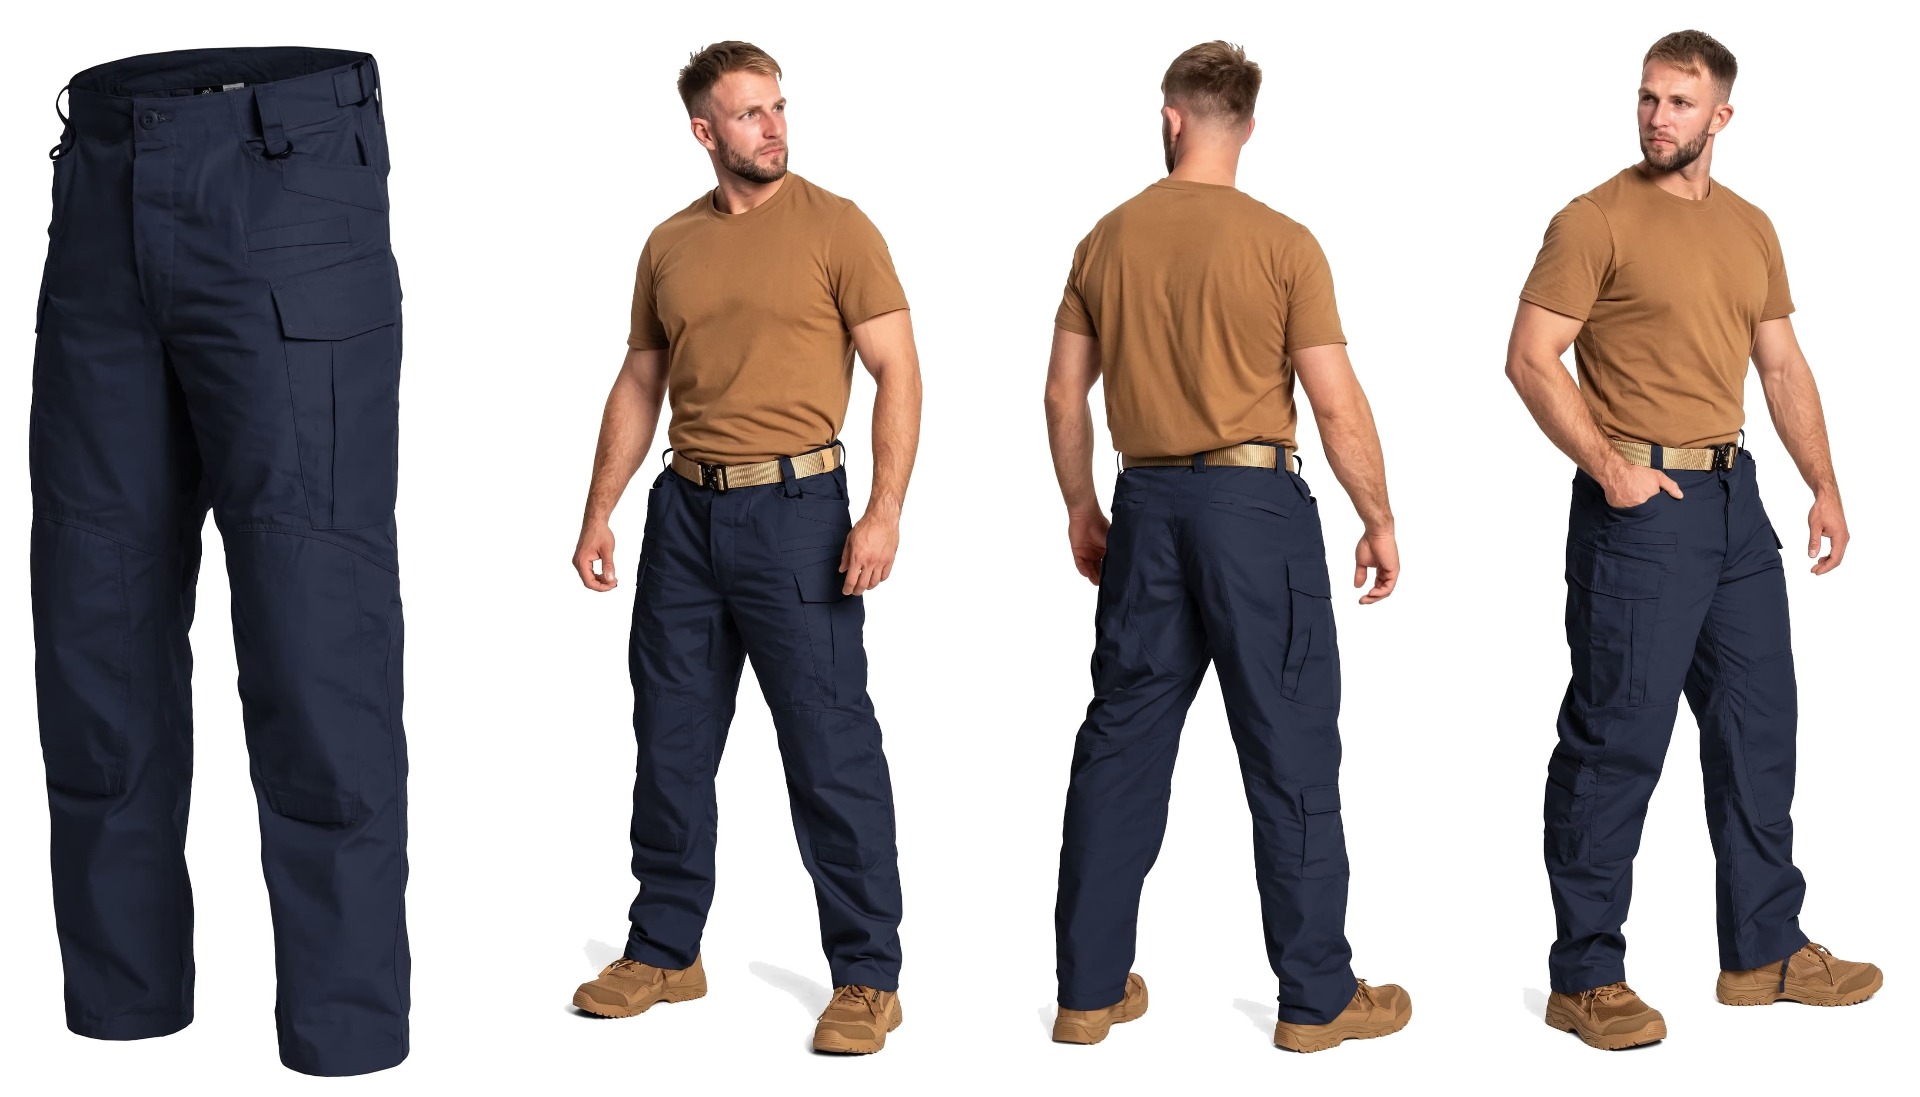 Ponujamo kakovostne Helikon SFU Next polycotton rip-stop hlače v temno modri barvi. Trpežne vojaške hlače s taktičnim dizajnom, idealne za moške. Pridobite svoj par danes in stopite v korak z vojaškimi trendi.